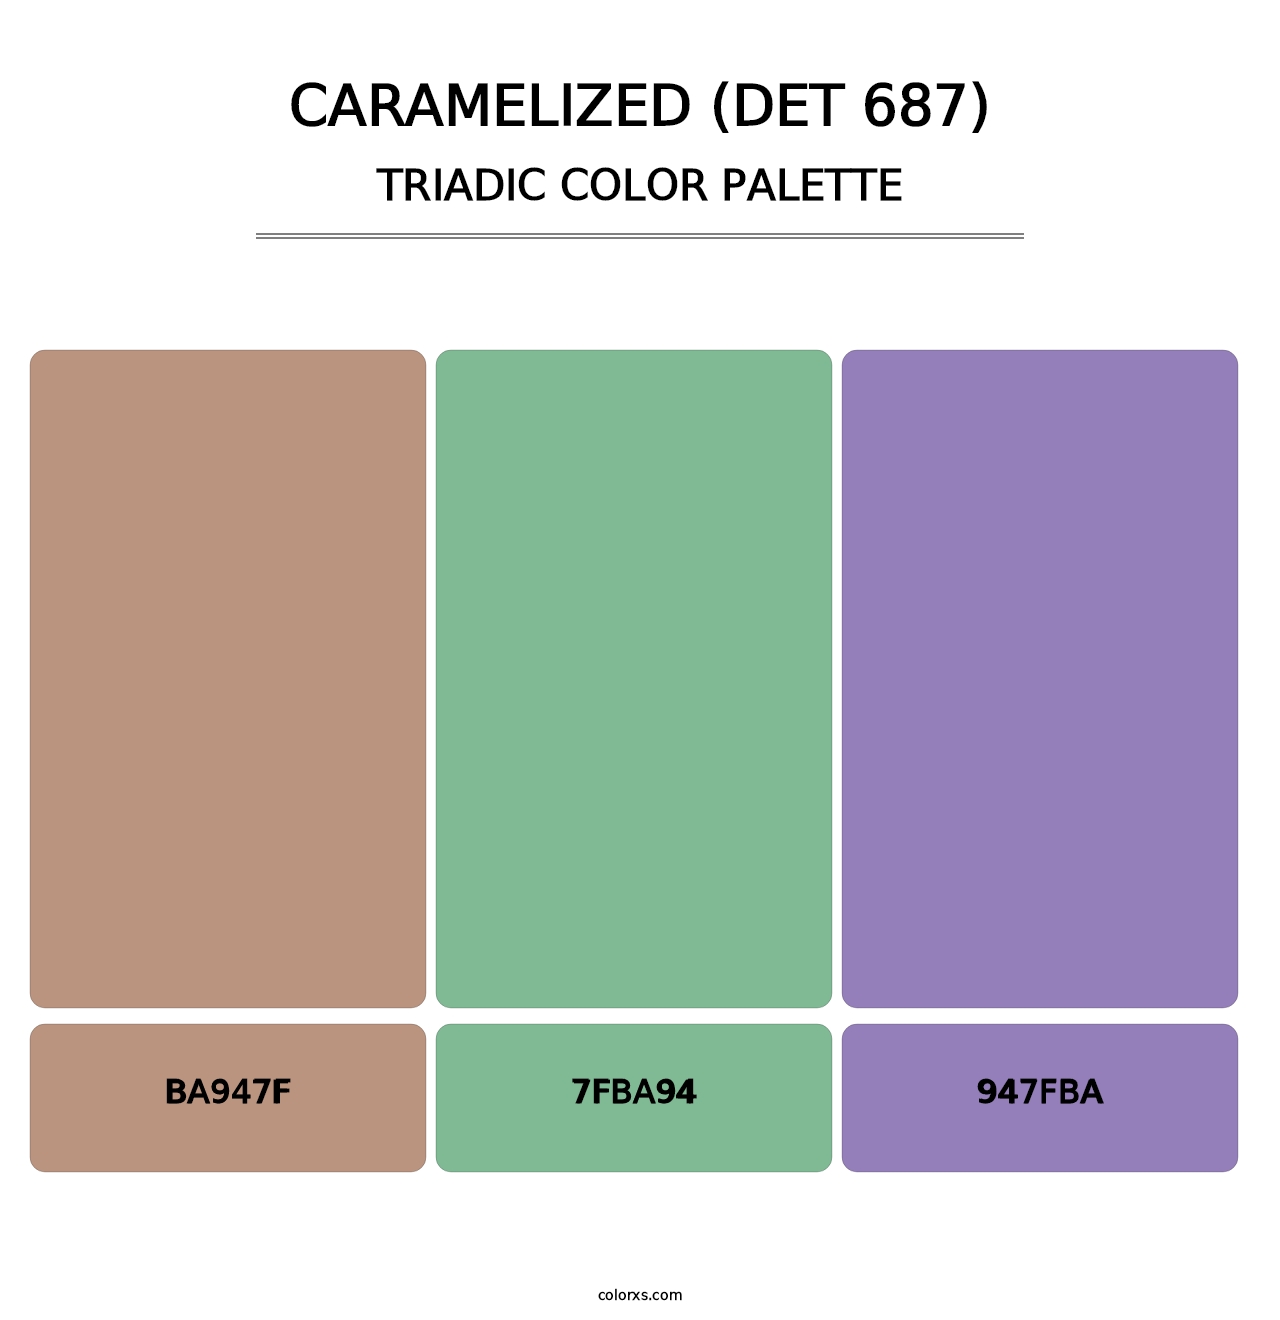 Caramelized (DET 687) - Triadic Color Palette